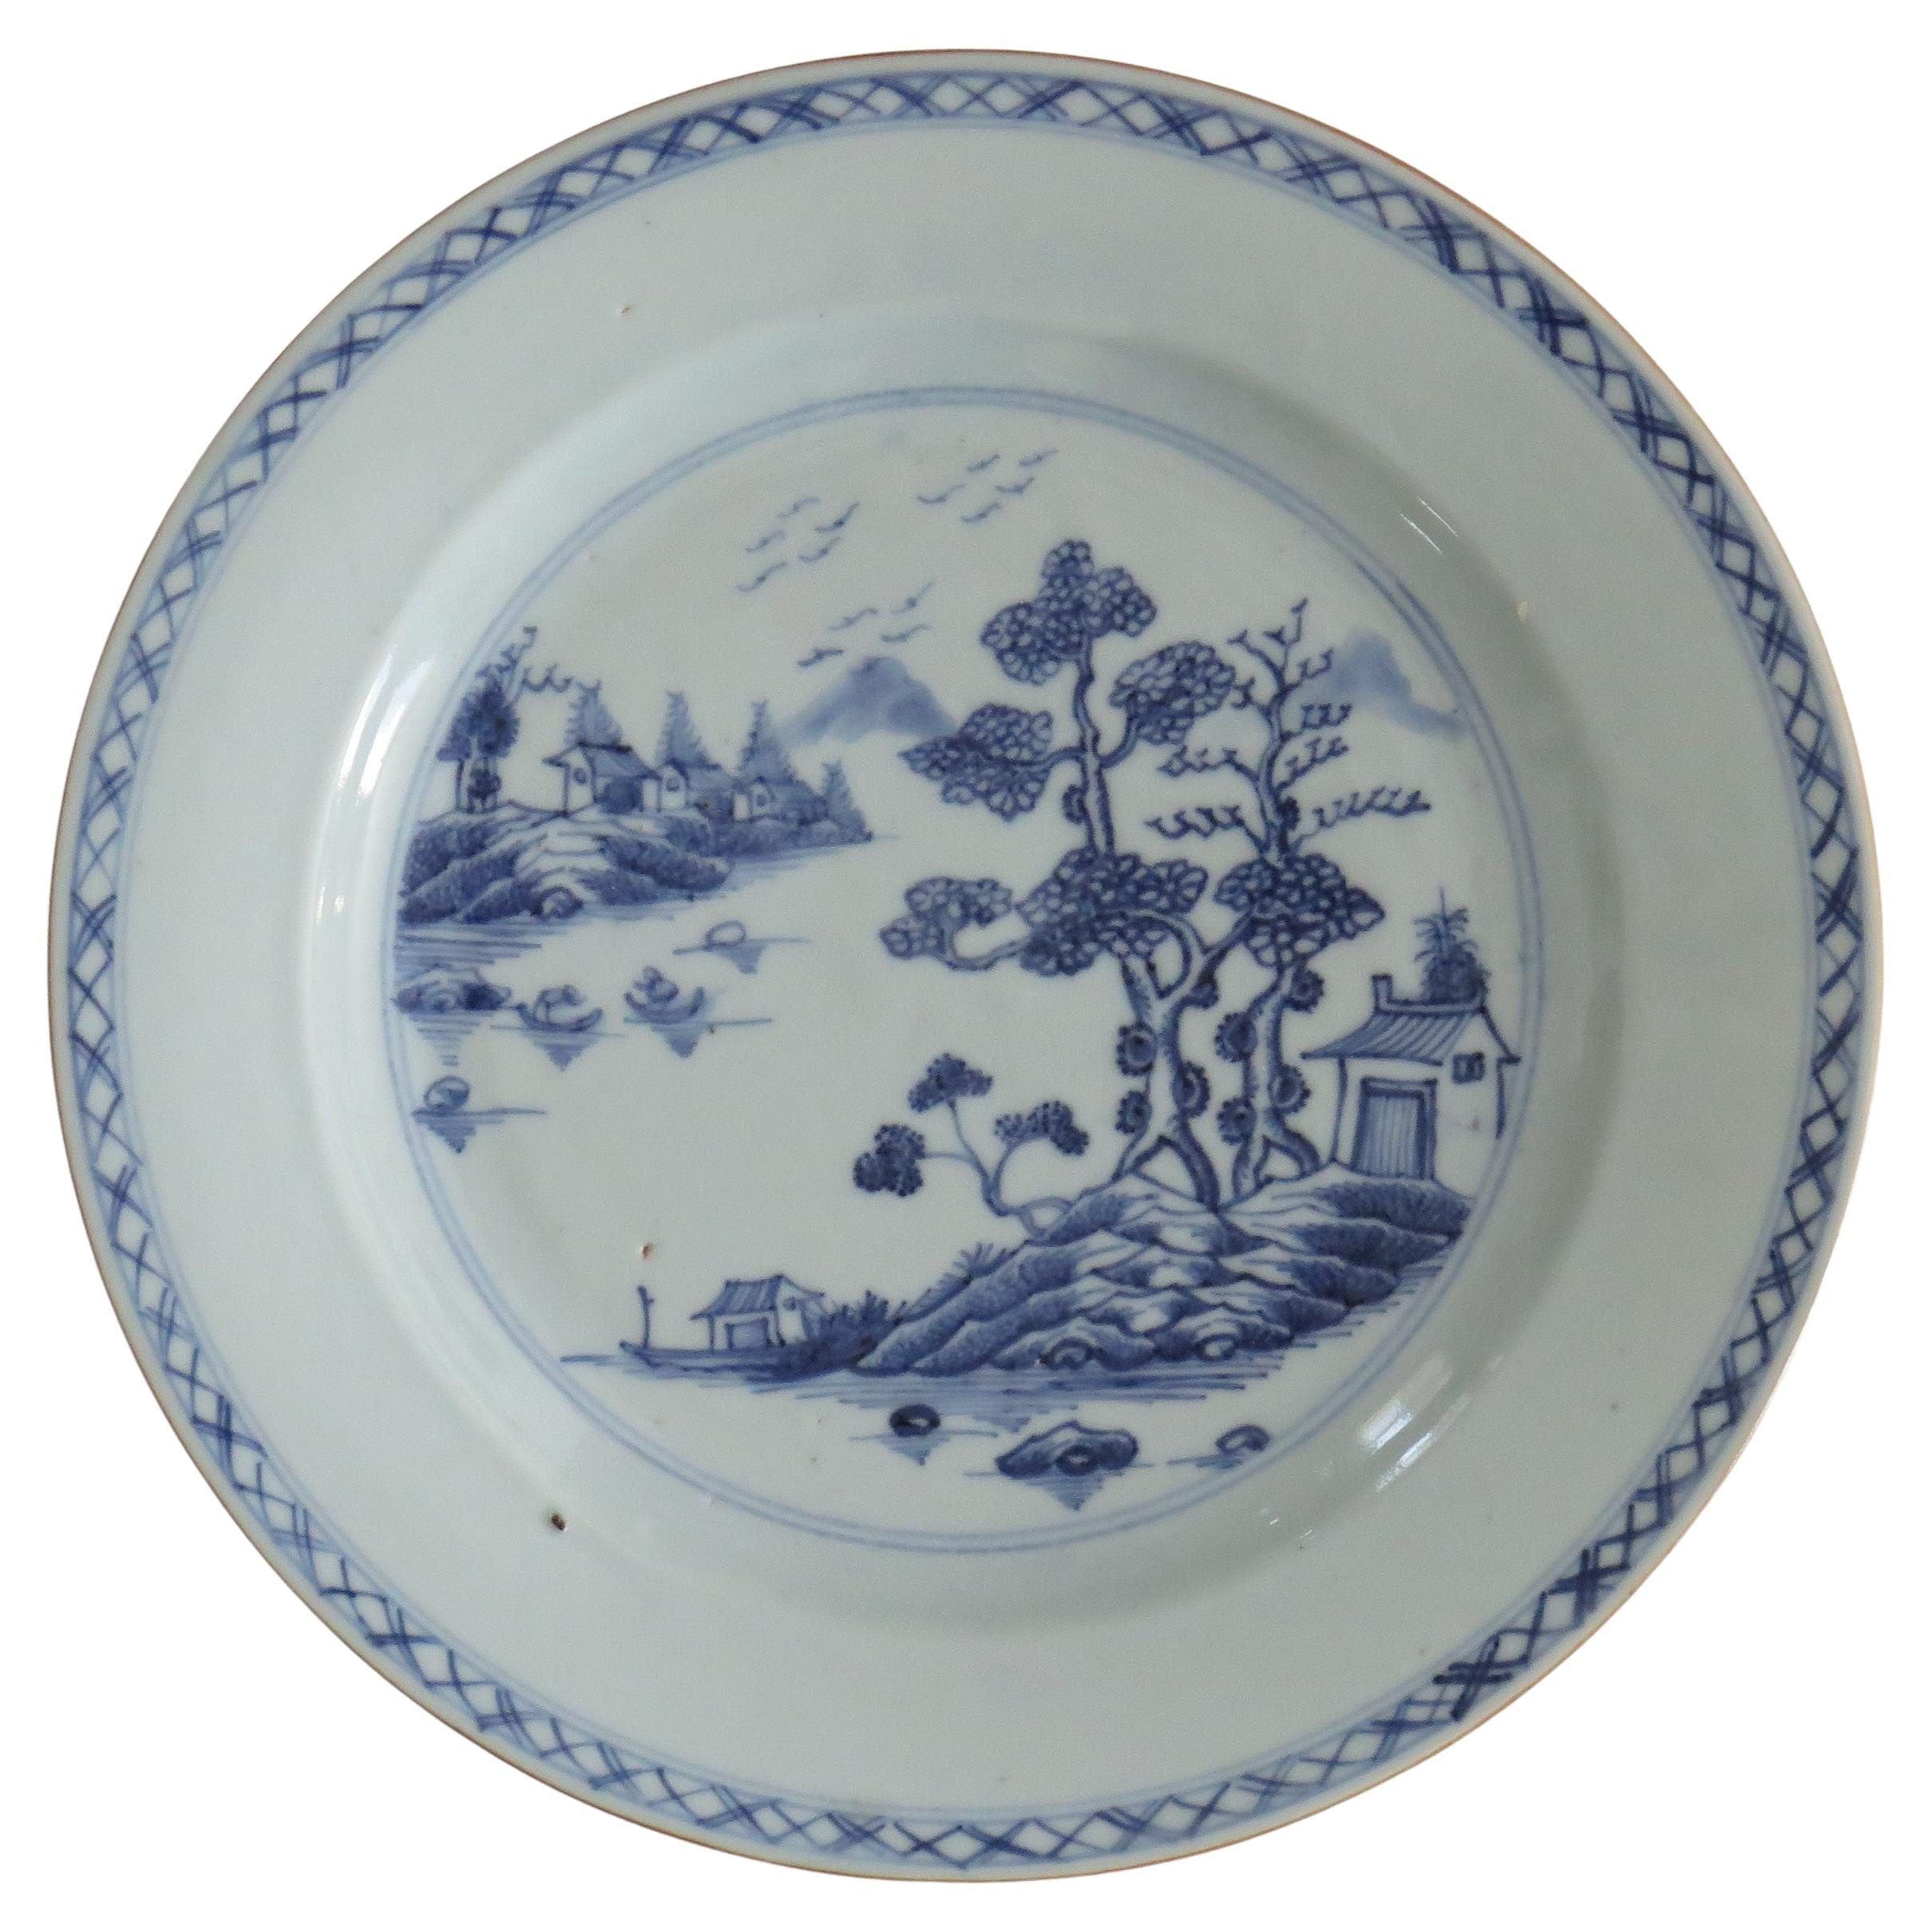 Assiette chinoise du 18ème siècle en porcelaine bleue et blanche, Qing Qianlong, datant d'environ 1770